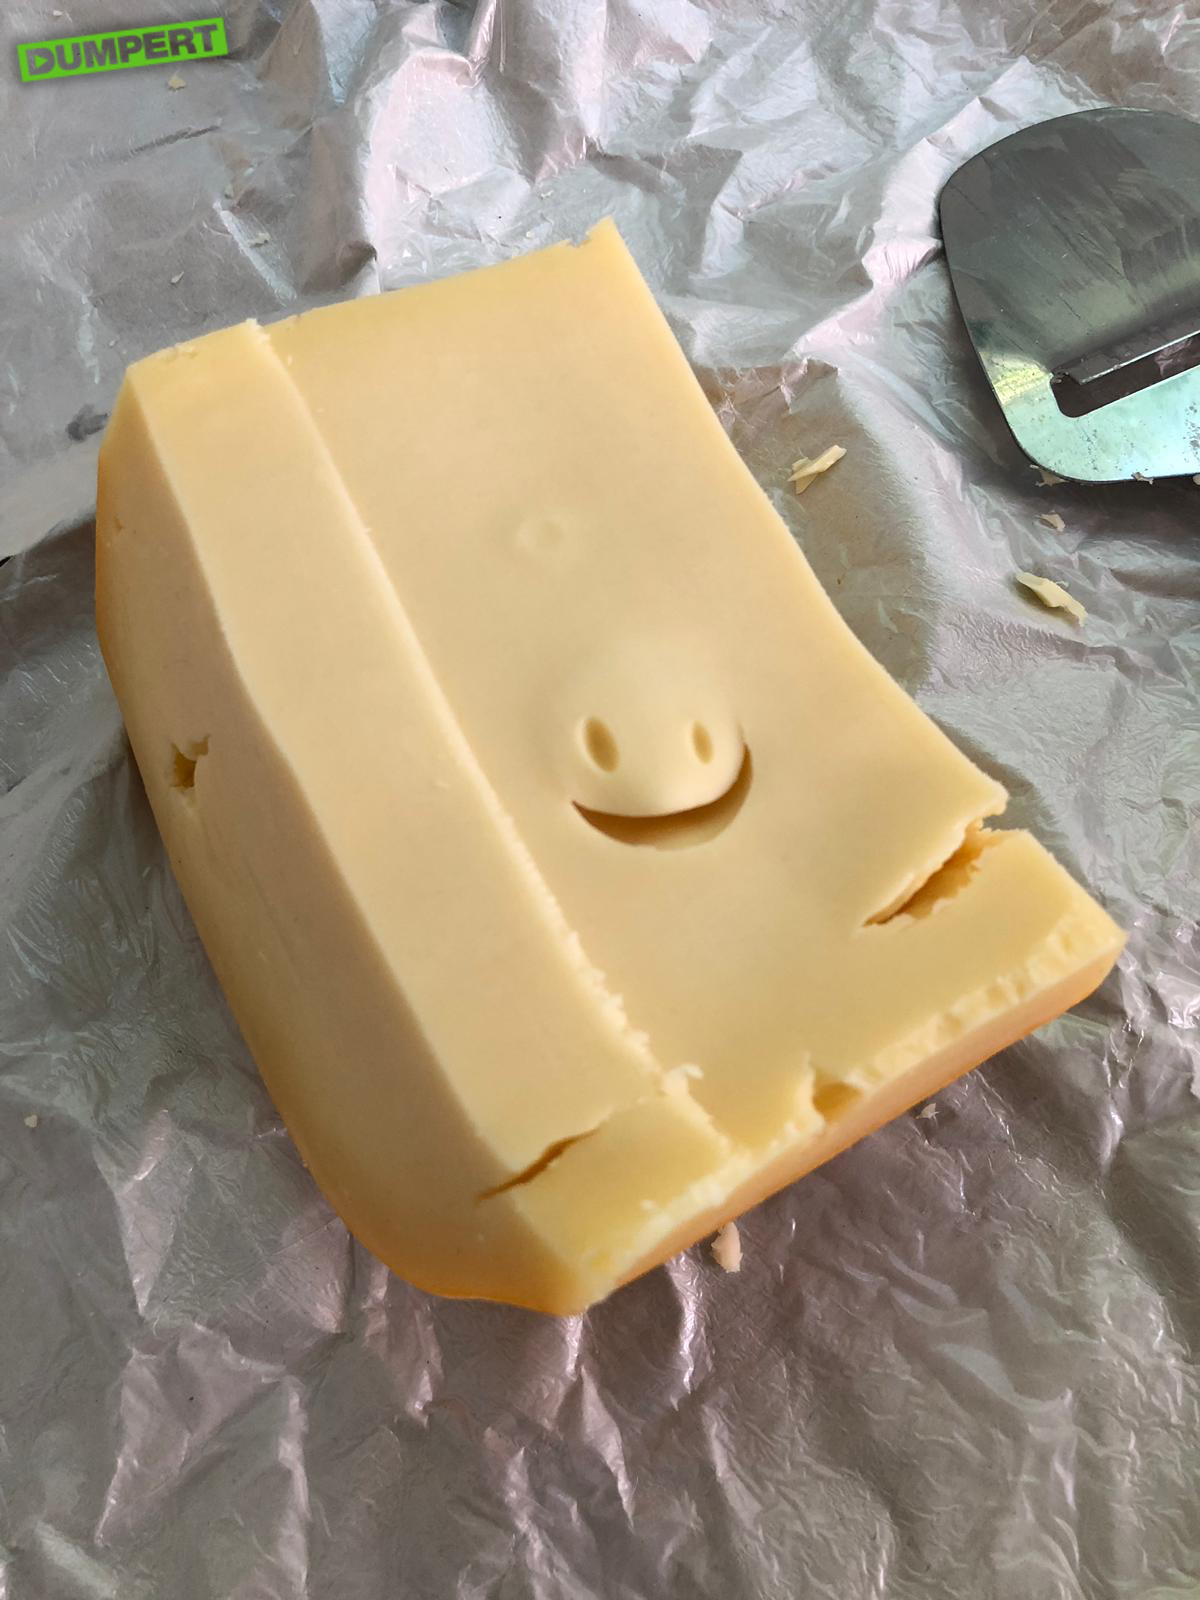 Mijn kaas is blij!